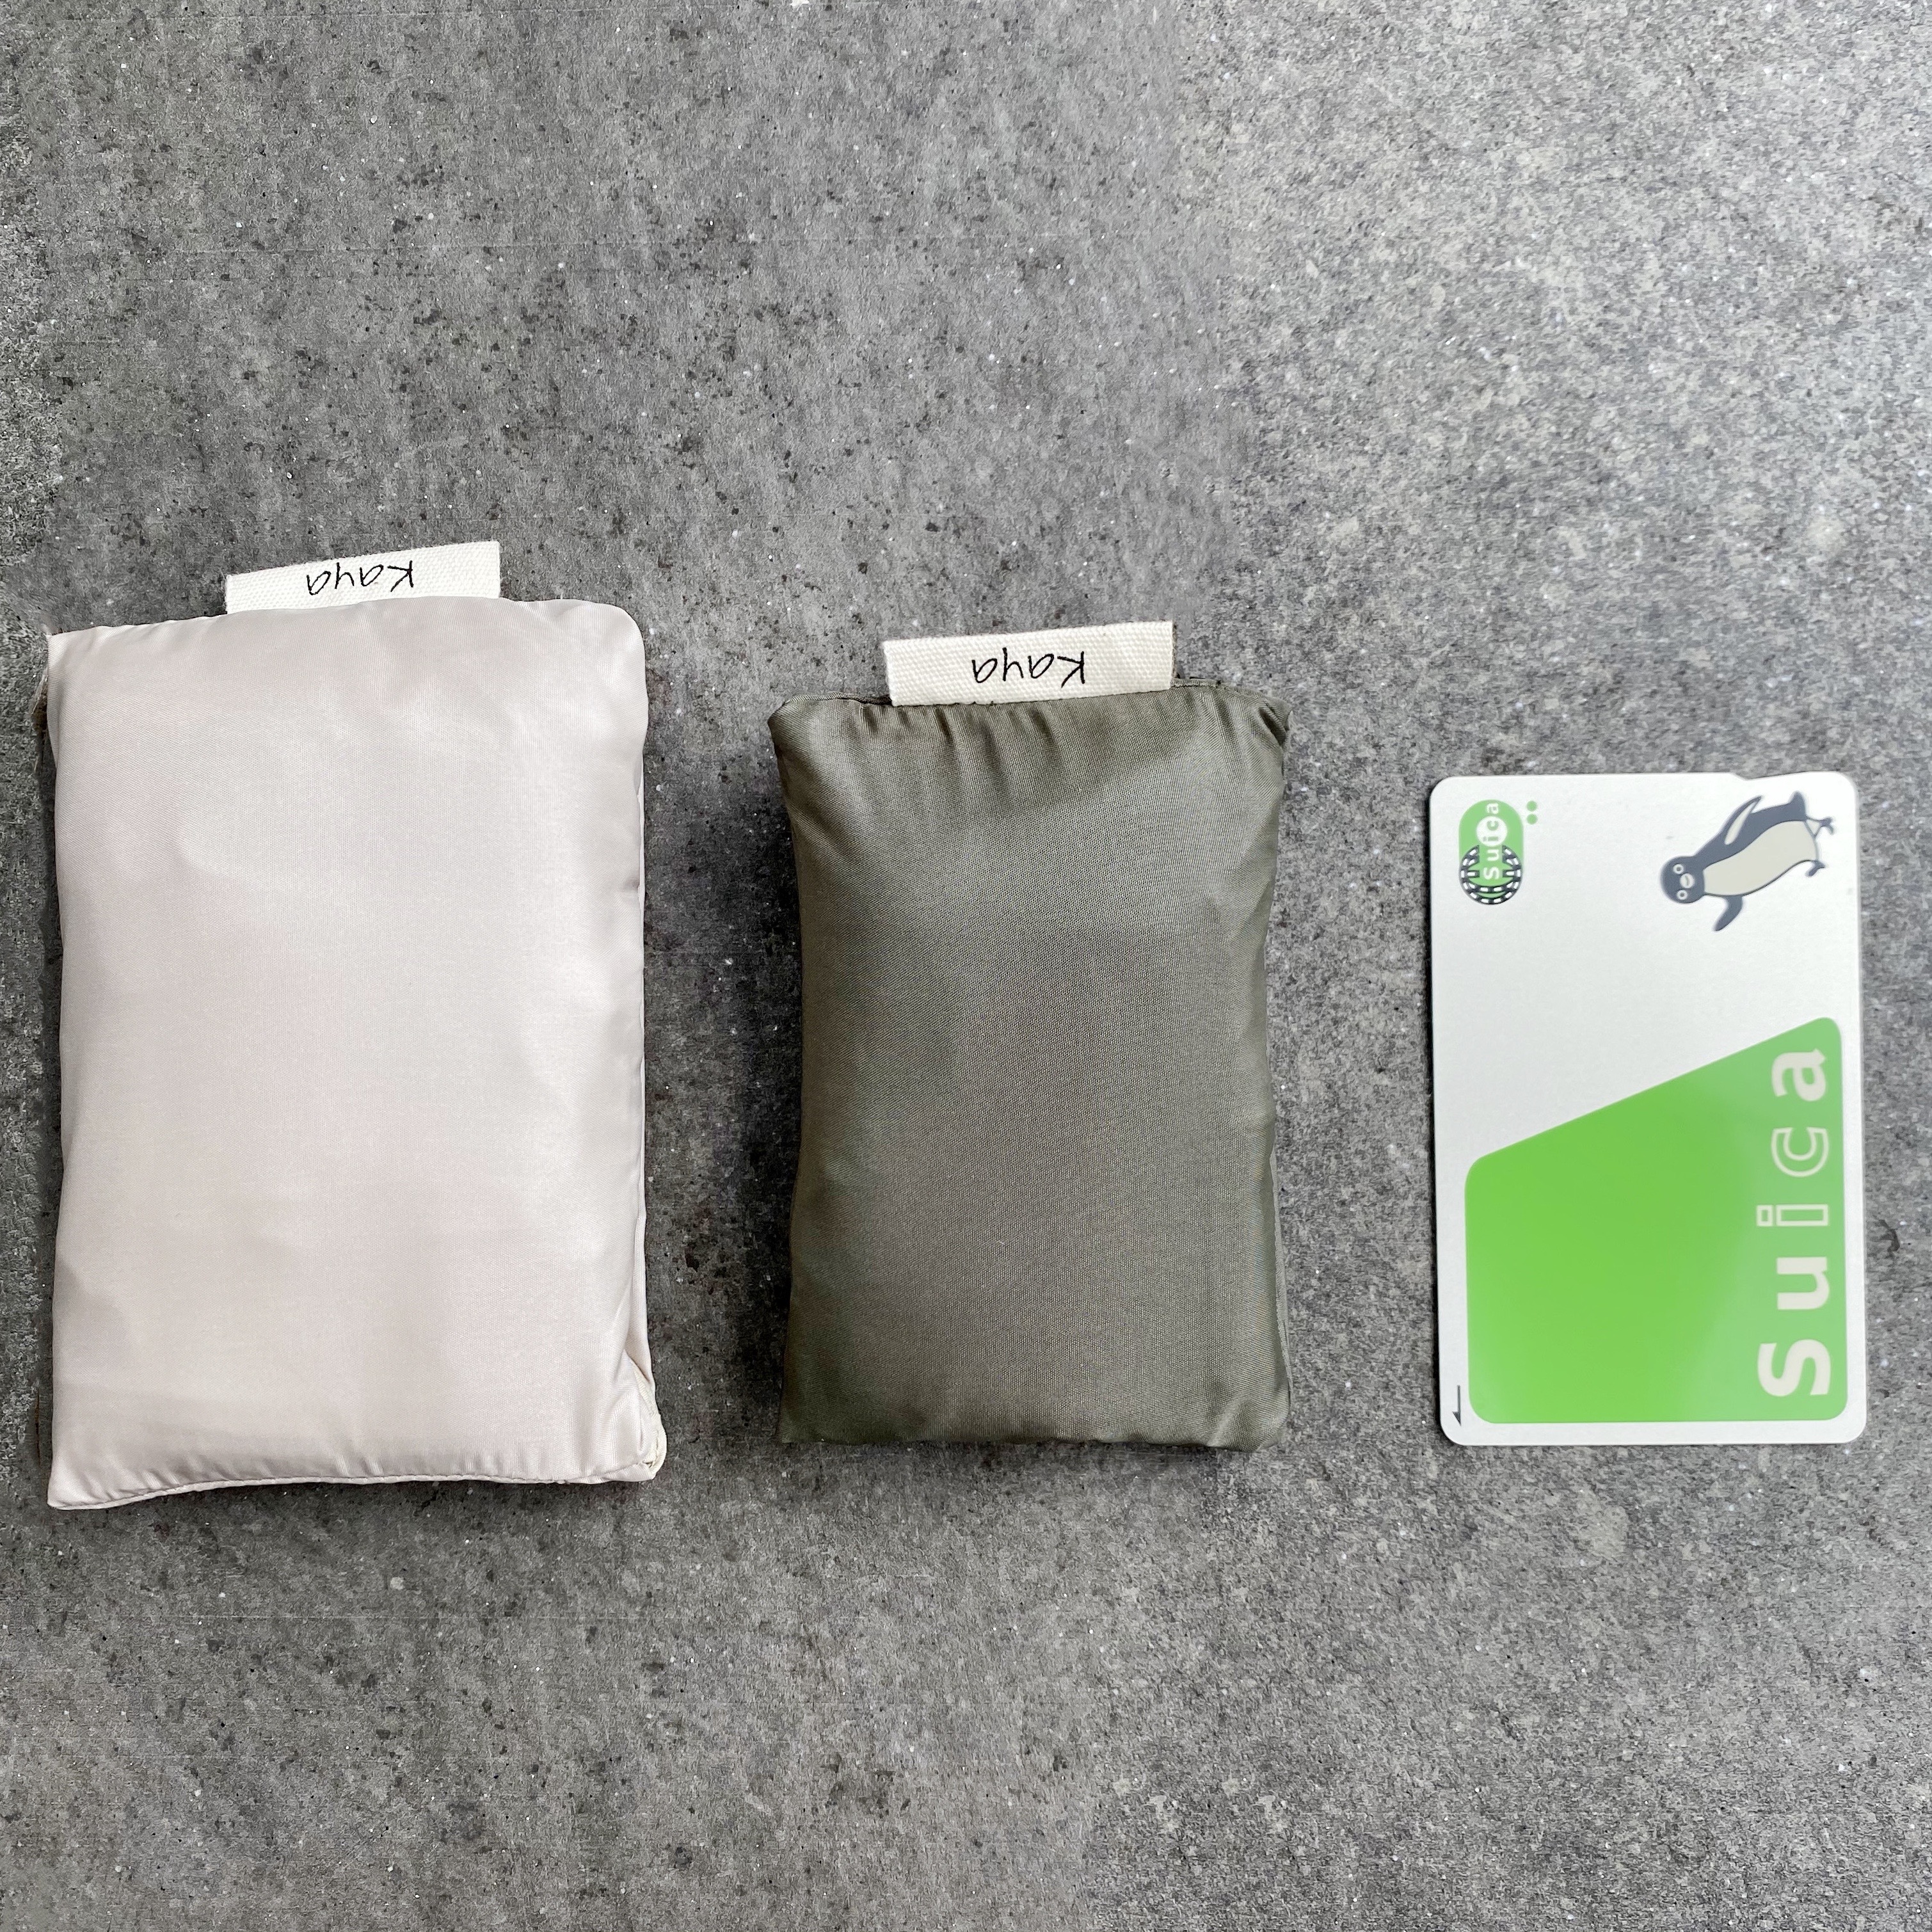 レジ袋型 カードサイズに畳めるスマートエコバッグ Sサイズ Iichi ハンドメイド クラフト作品 手仕事品の通販